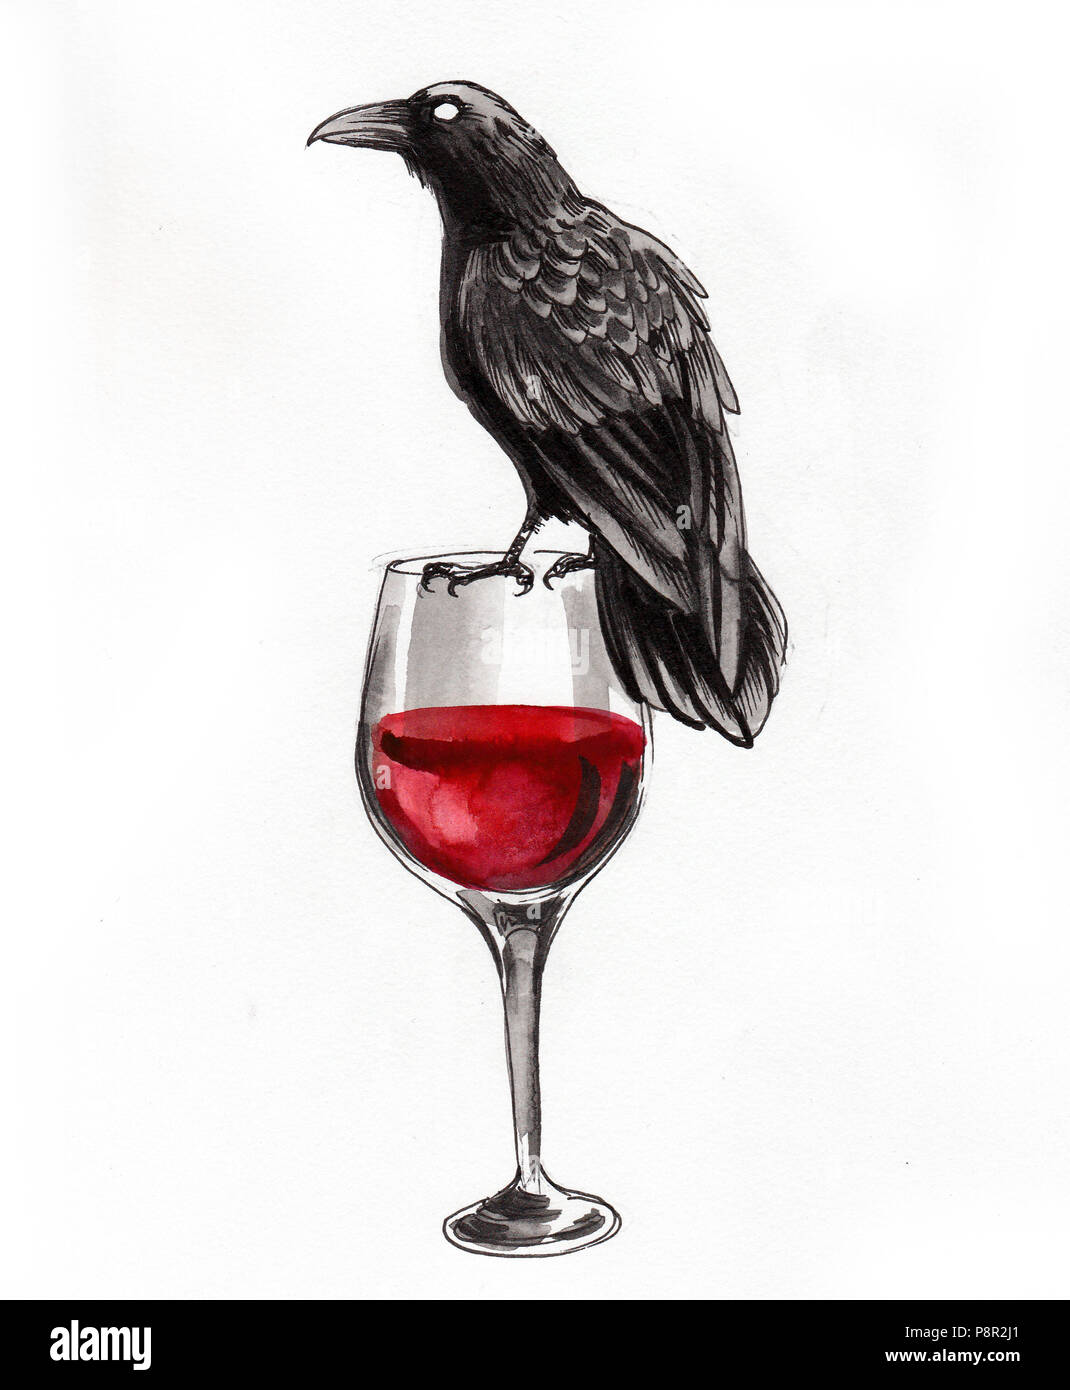 Corbeau noir assis sur un verre de vin rouge Photo Stock - Alamy